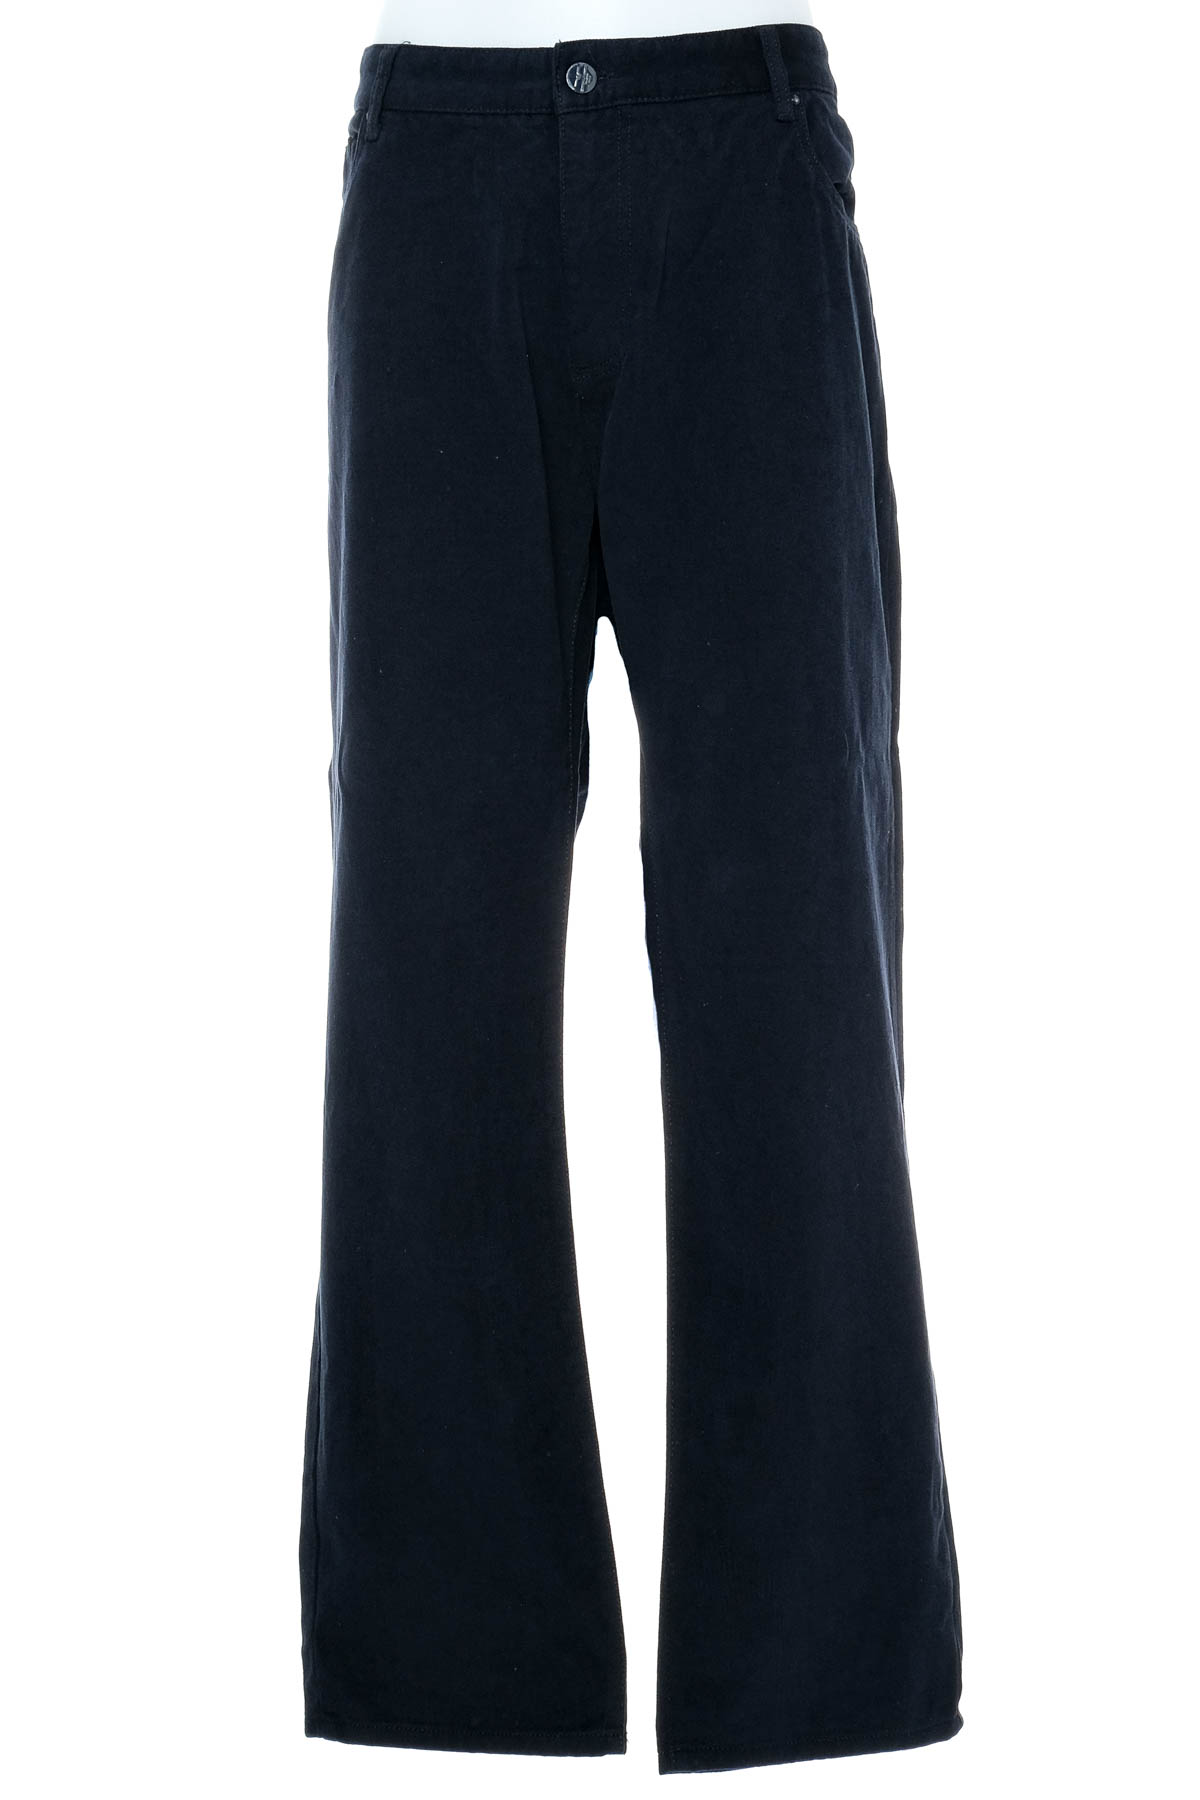 Pantalon pentru bărbați - Armani Jeans - 0